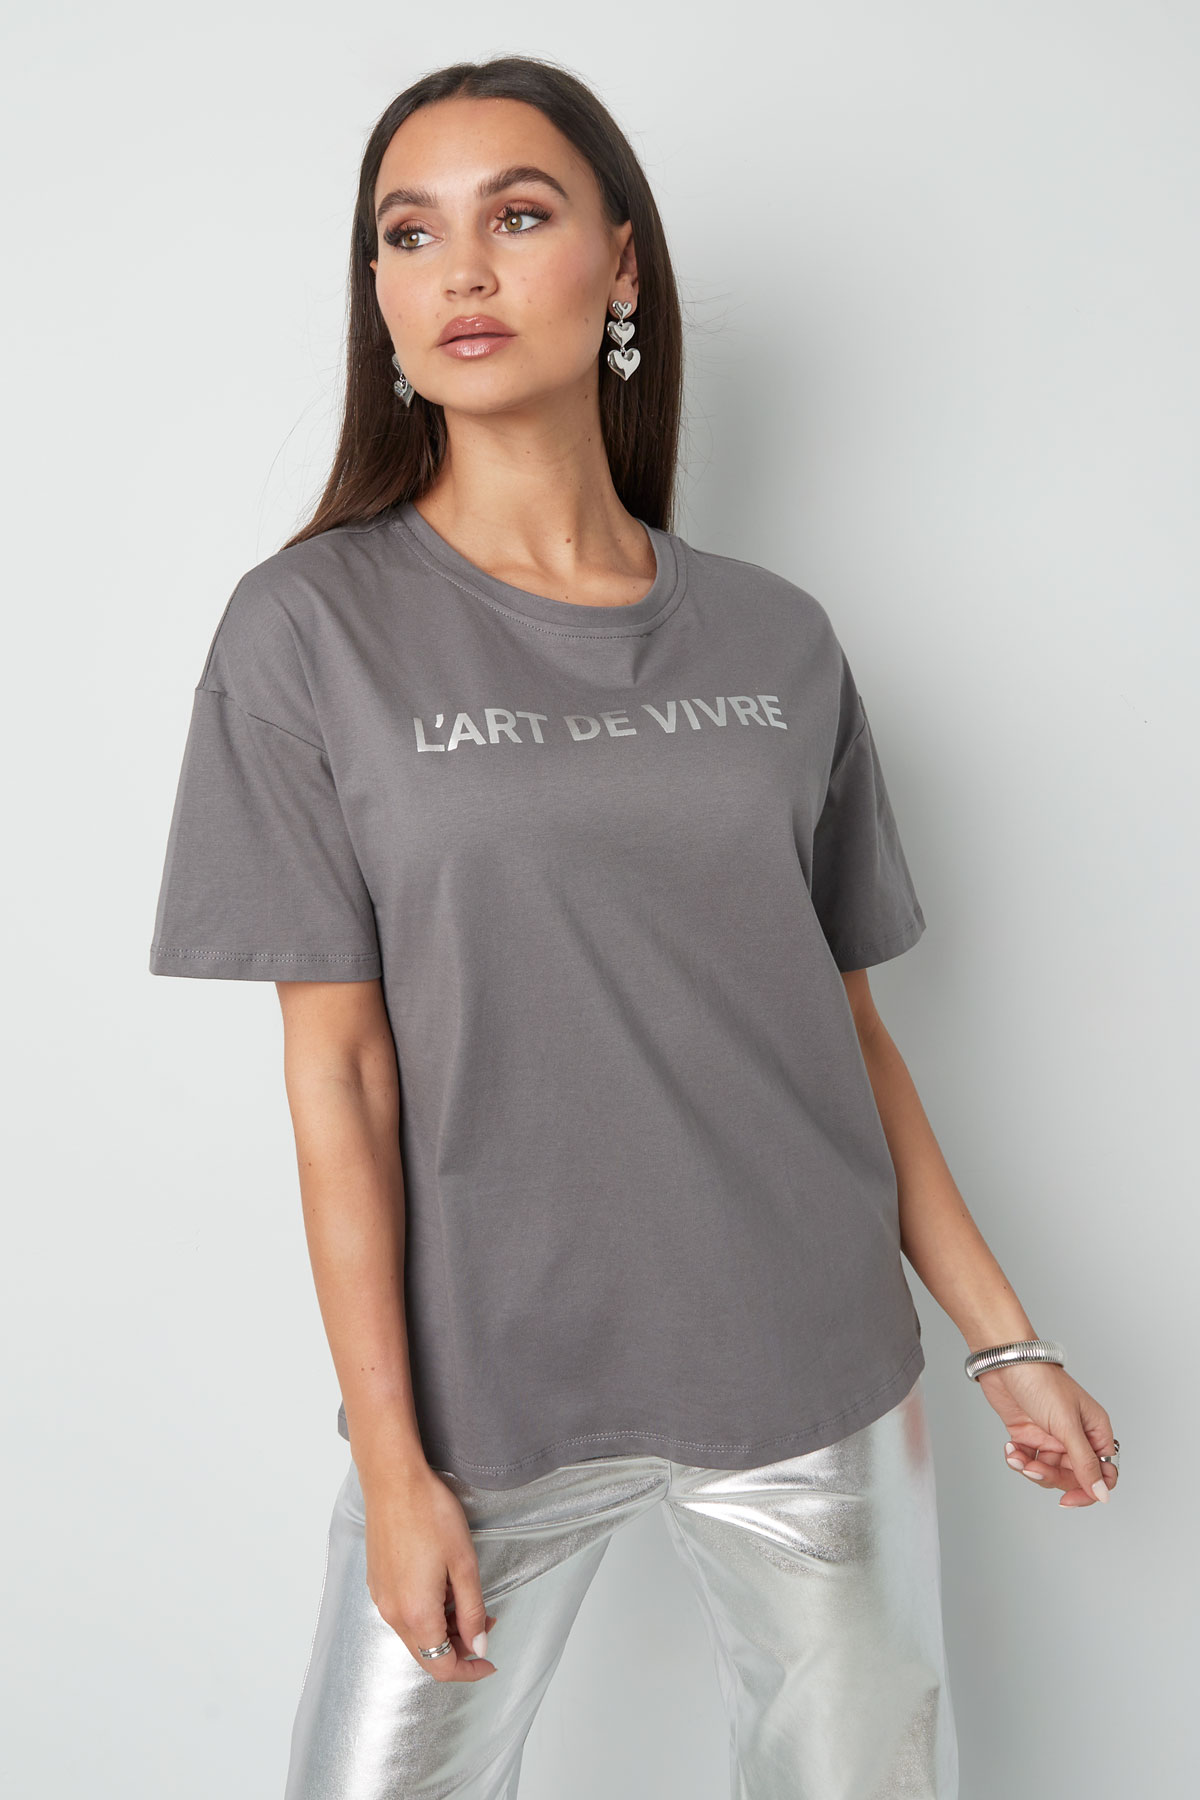 T-shirt l'art de vivre - grigio argento h5 Immagine2